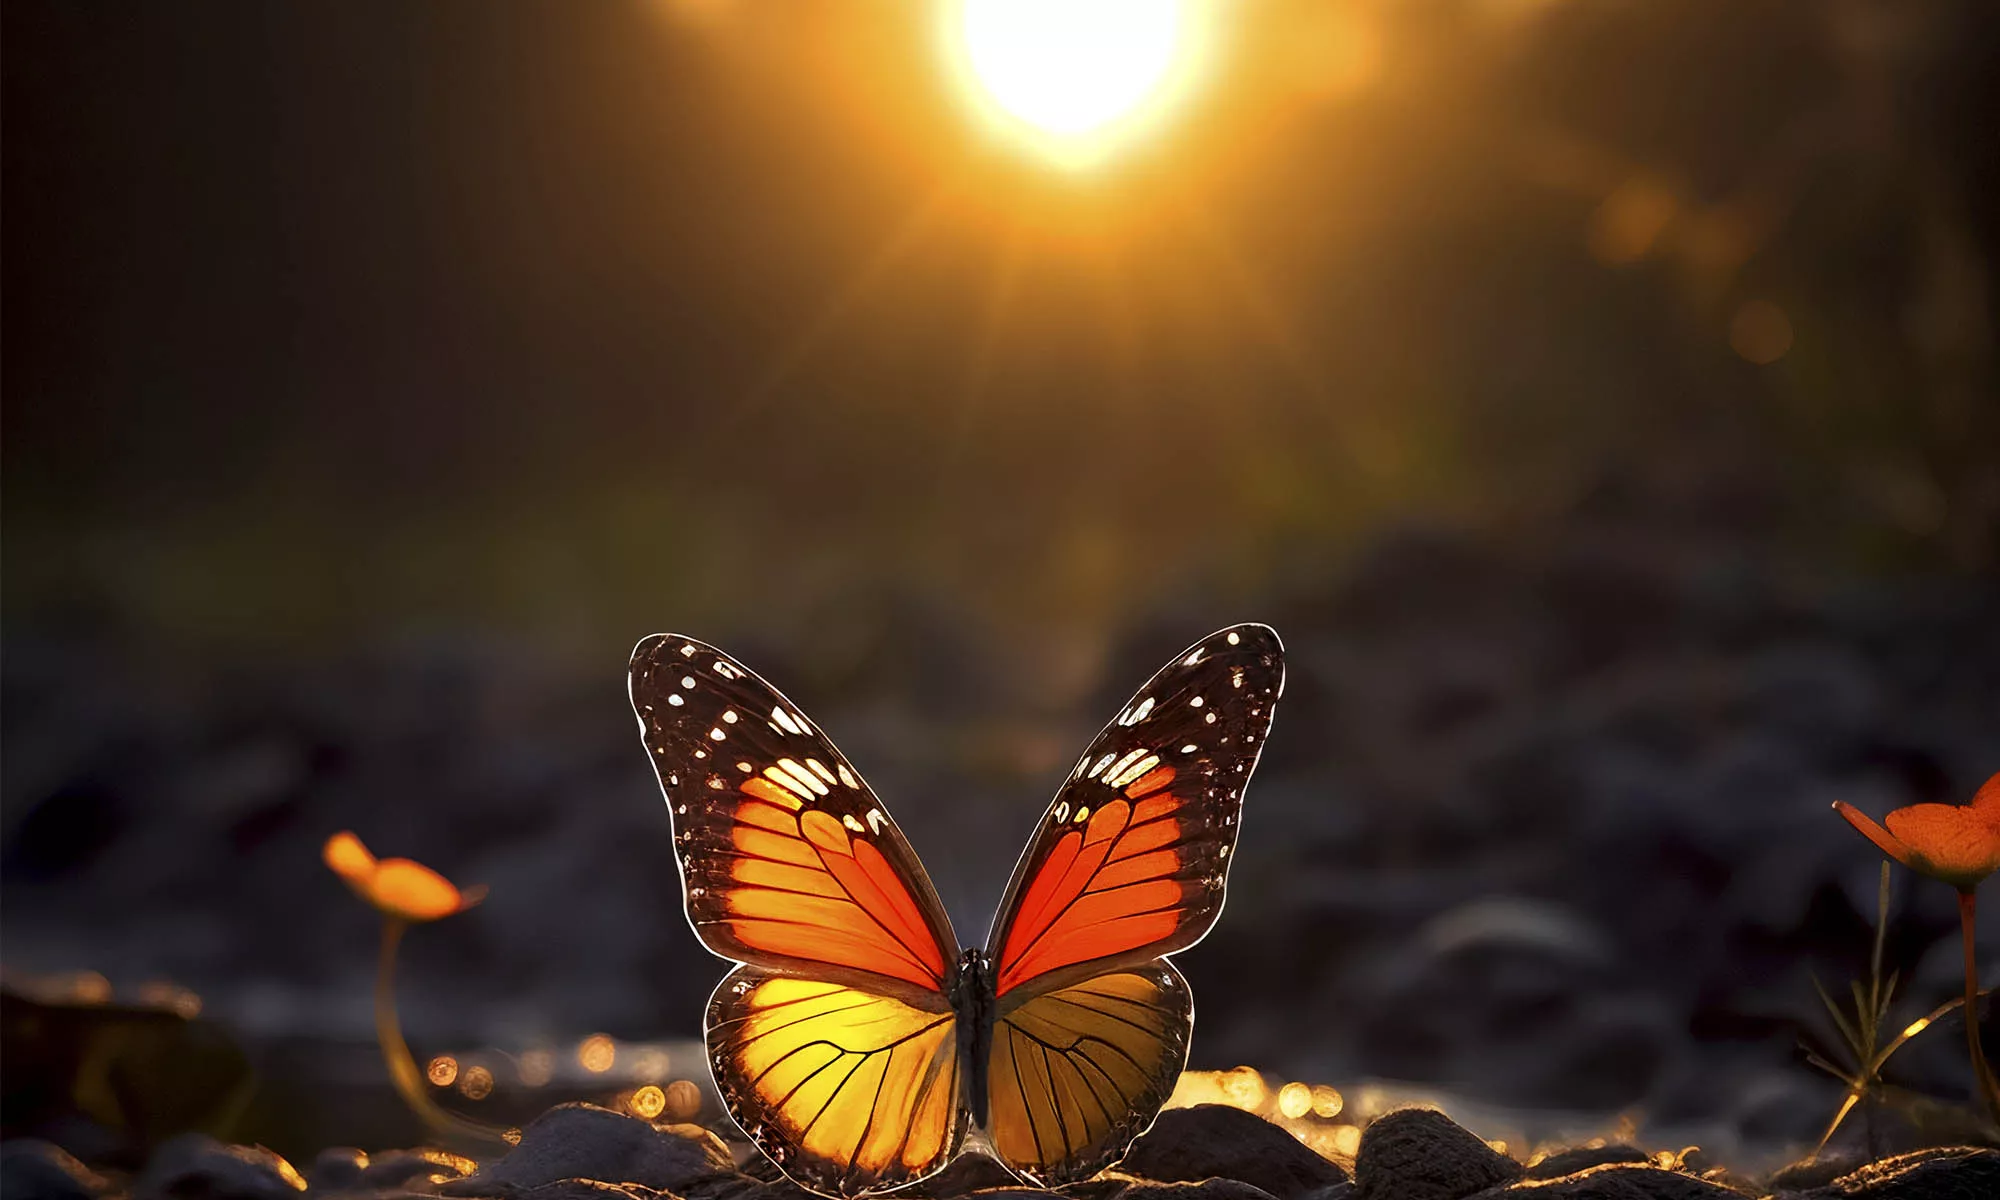 El primer vuelo de una mariposa ‘puede' convertirse en una incipiente fuente de energía.